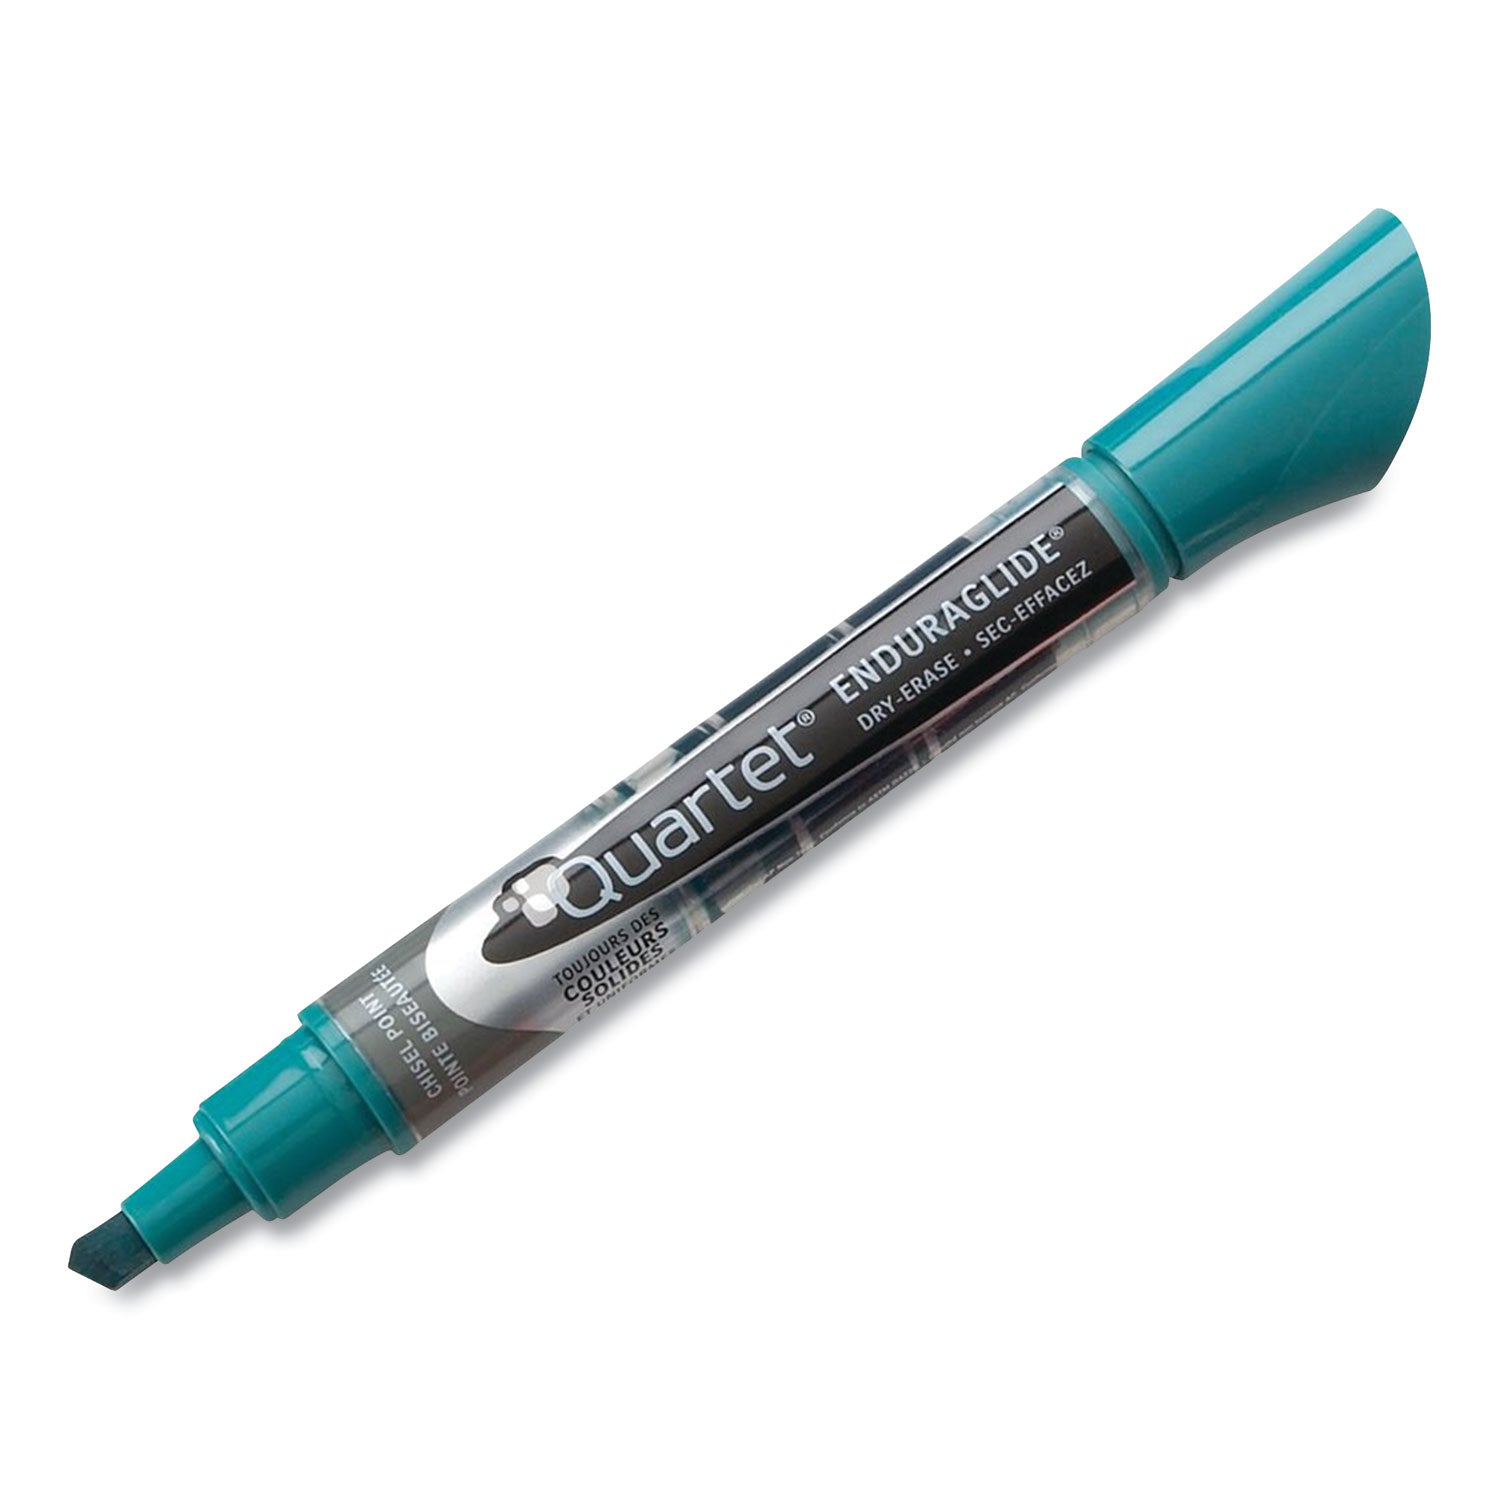 enduraglide-dry-erase-marker-kit-with-cleaner-and-eraser-broad-chisel-tip-assorted-colors-4-pack_qrt5001m4sk - 5